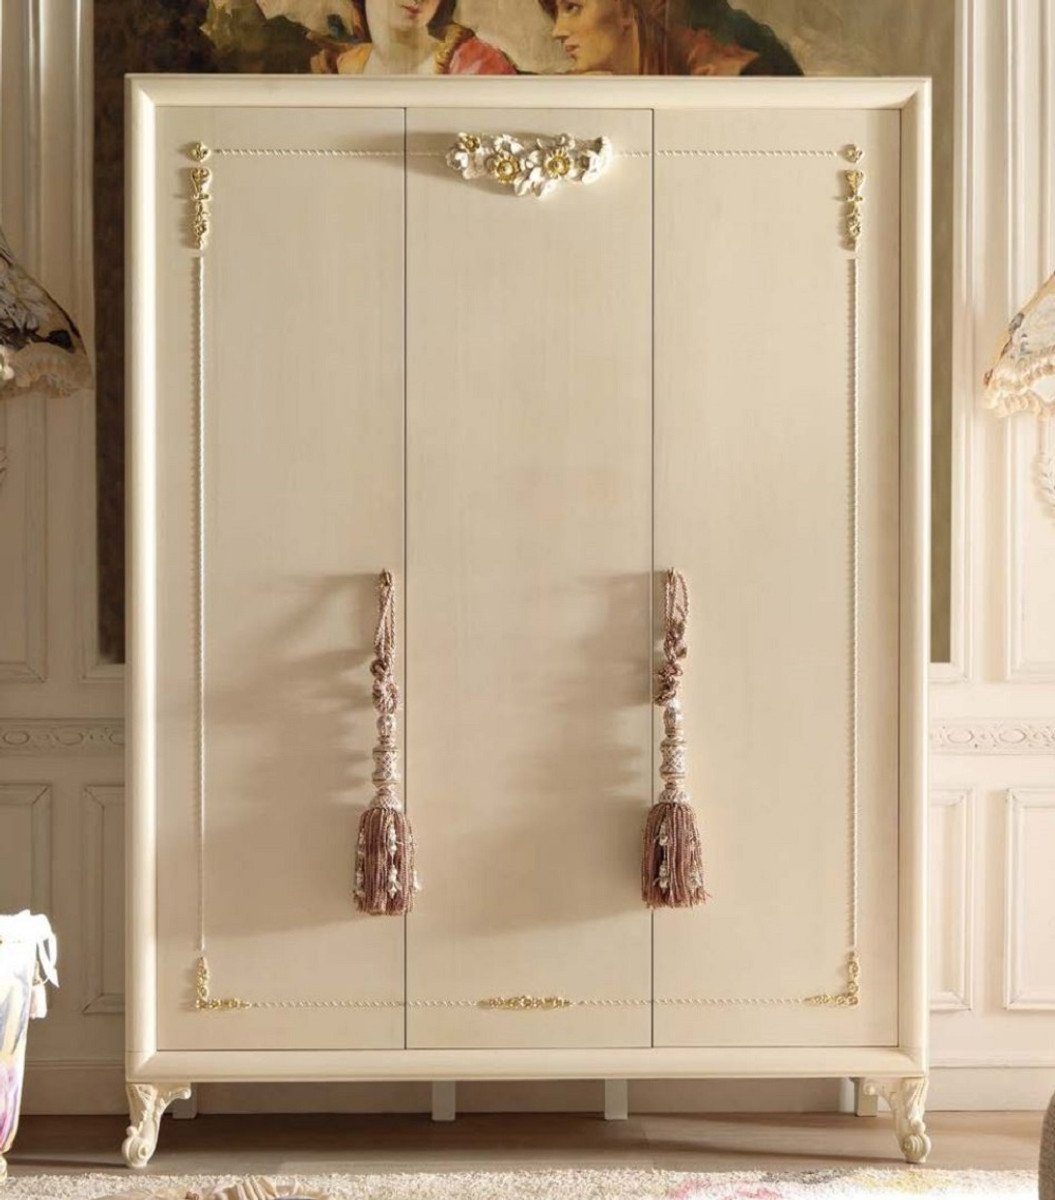 Casa Padrino Kleiderschrank Luxus Barock Schlafzimmerschrank Cremefarben / Gold - Handgefertigter Kleiderschrank mit 3 Türen - Barock Schlafzimmer Möbel - Luxus Qualität - Made in Italy